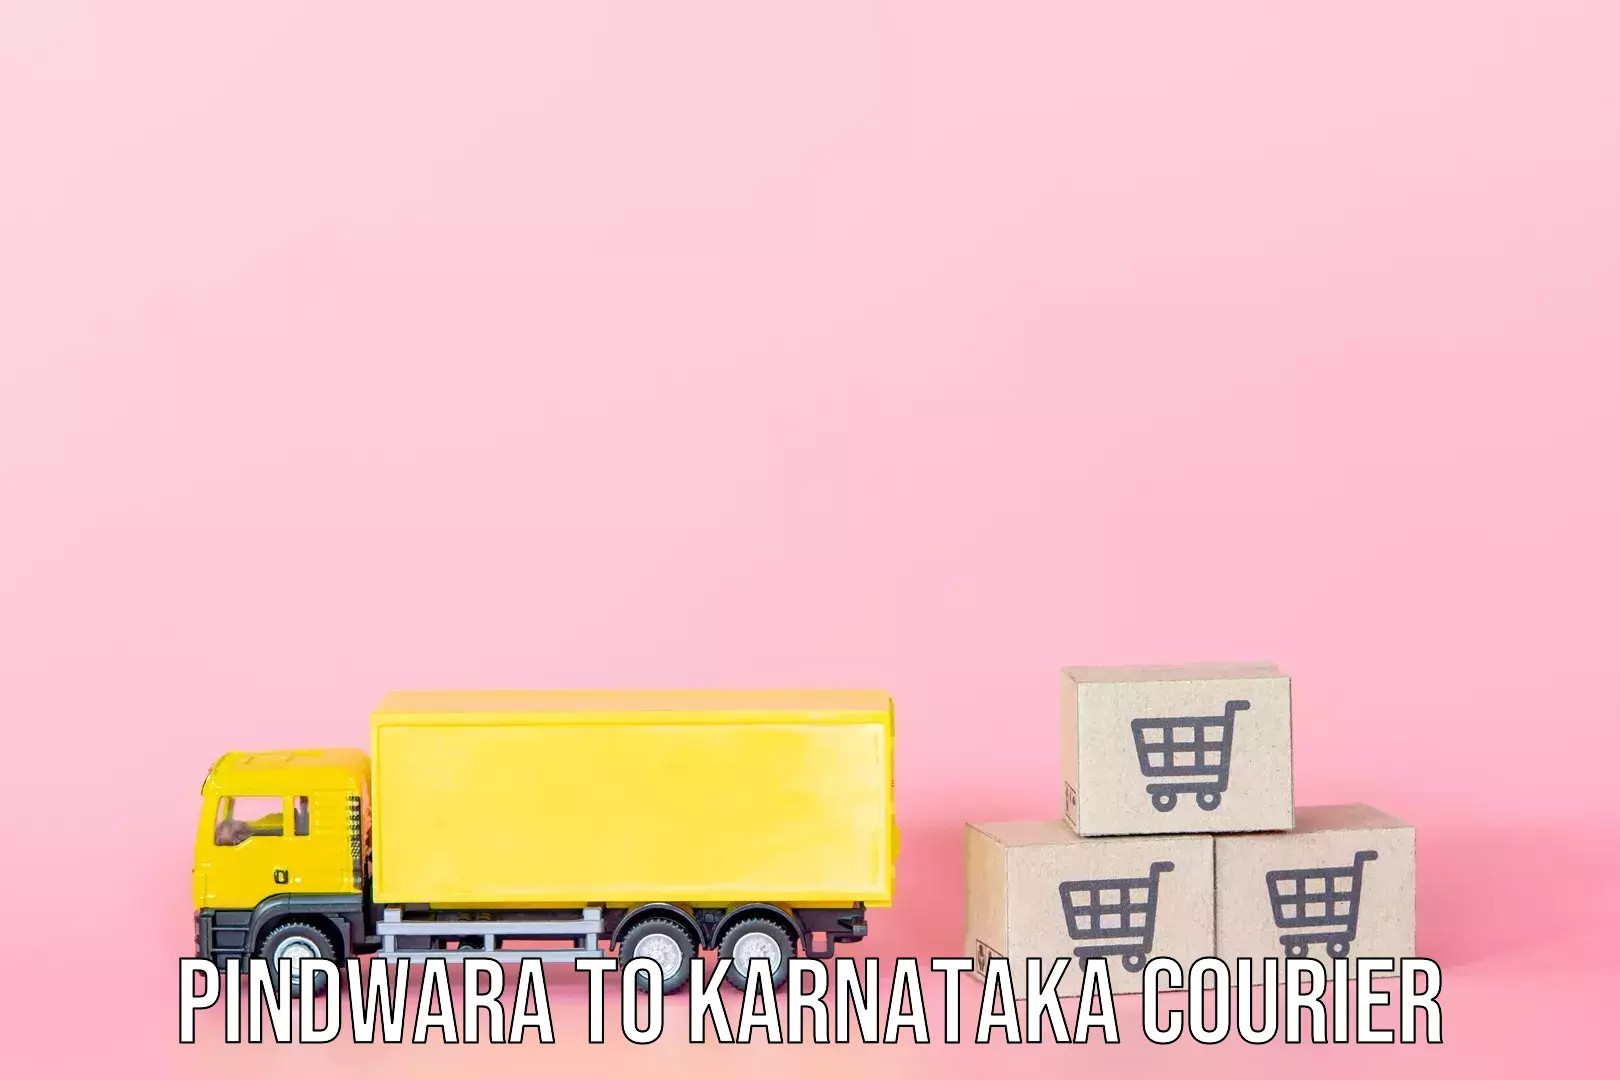 Baggage delivery scheduling Pindwara to Karnataka